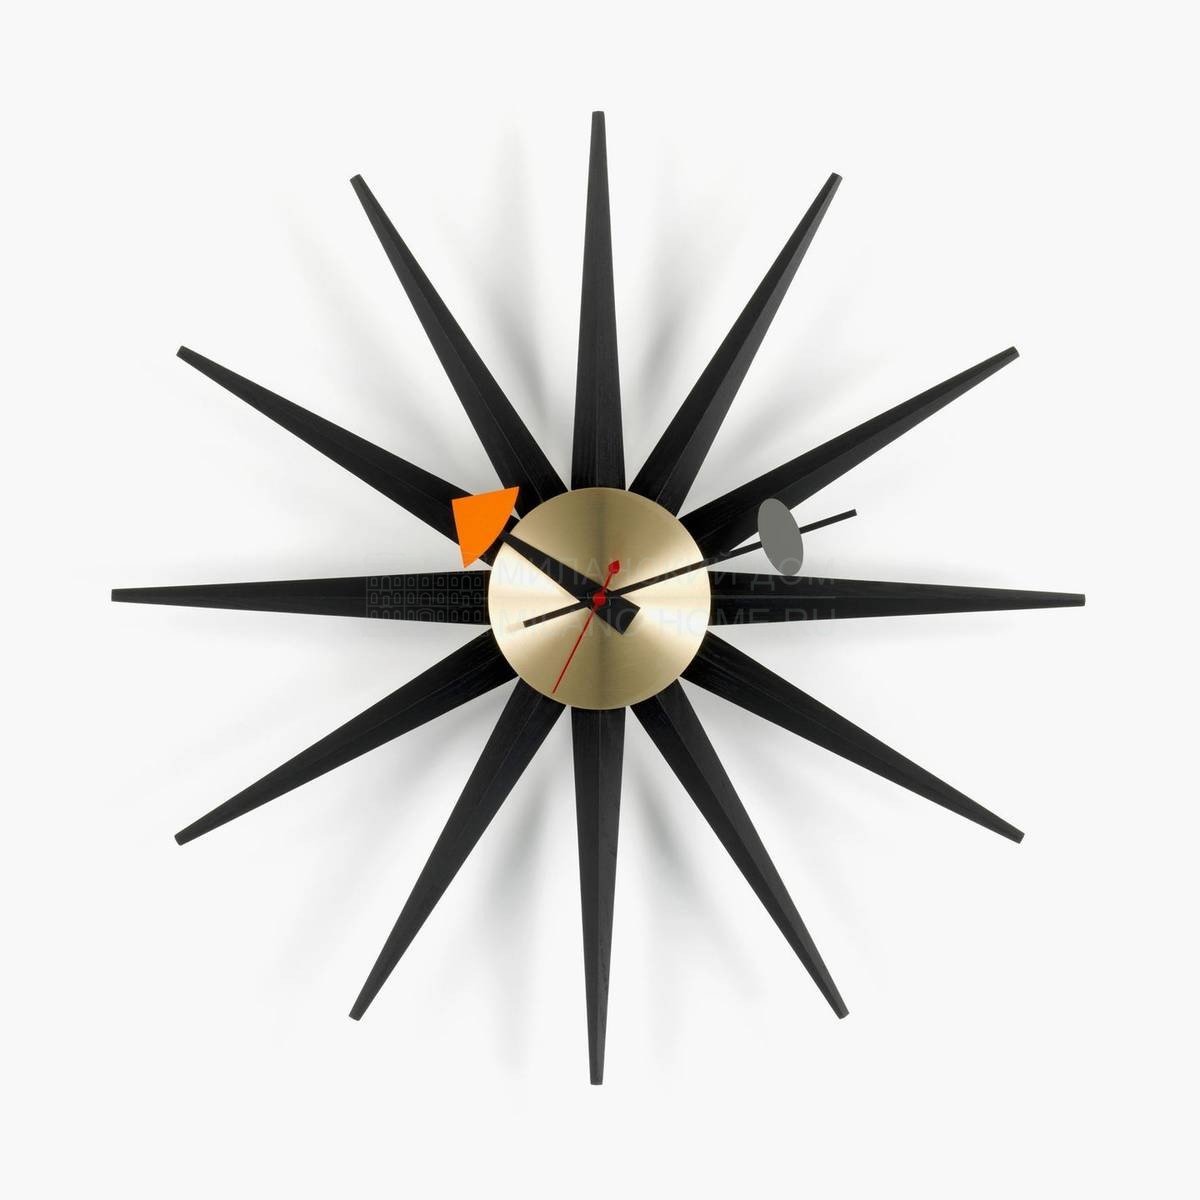 Настенные часы Sunburst Clock из Швейцарии фабрики VITRA